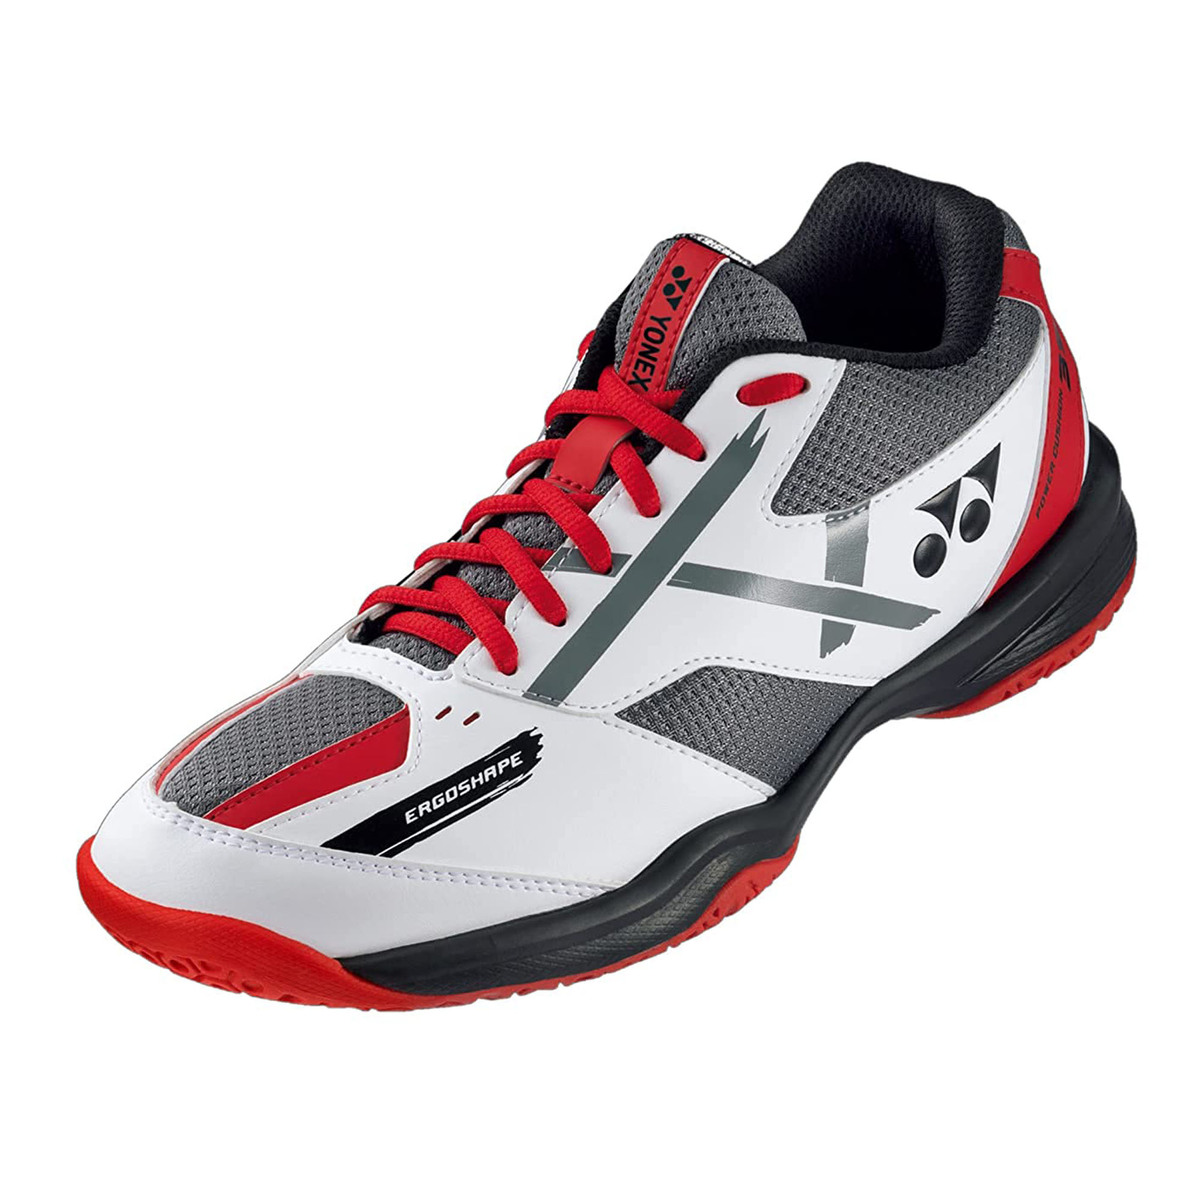 يونيكس حذاء تنس الريشة للرجال، SHB39WEX، أبيض/أحمر، 40